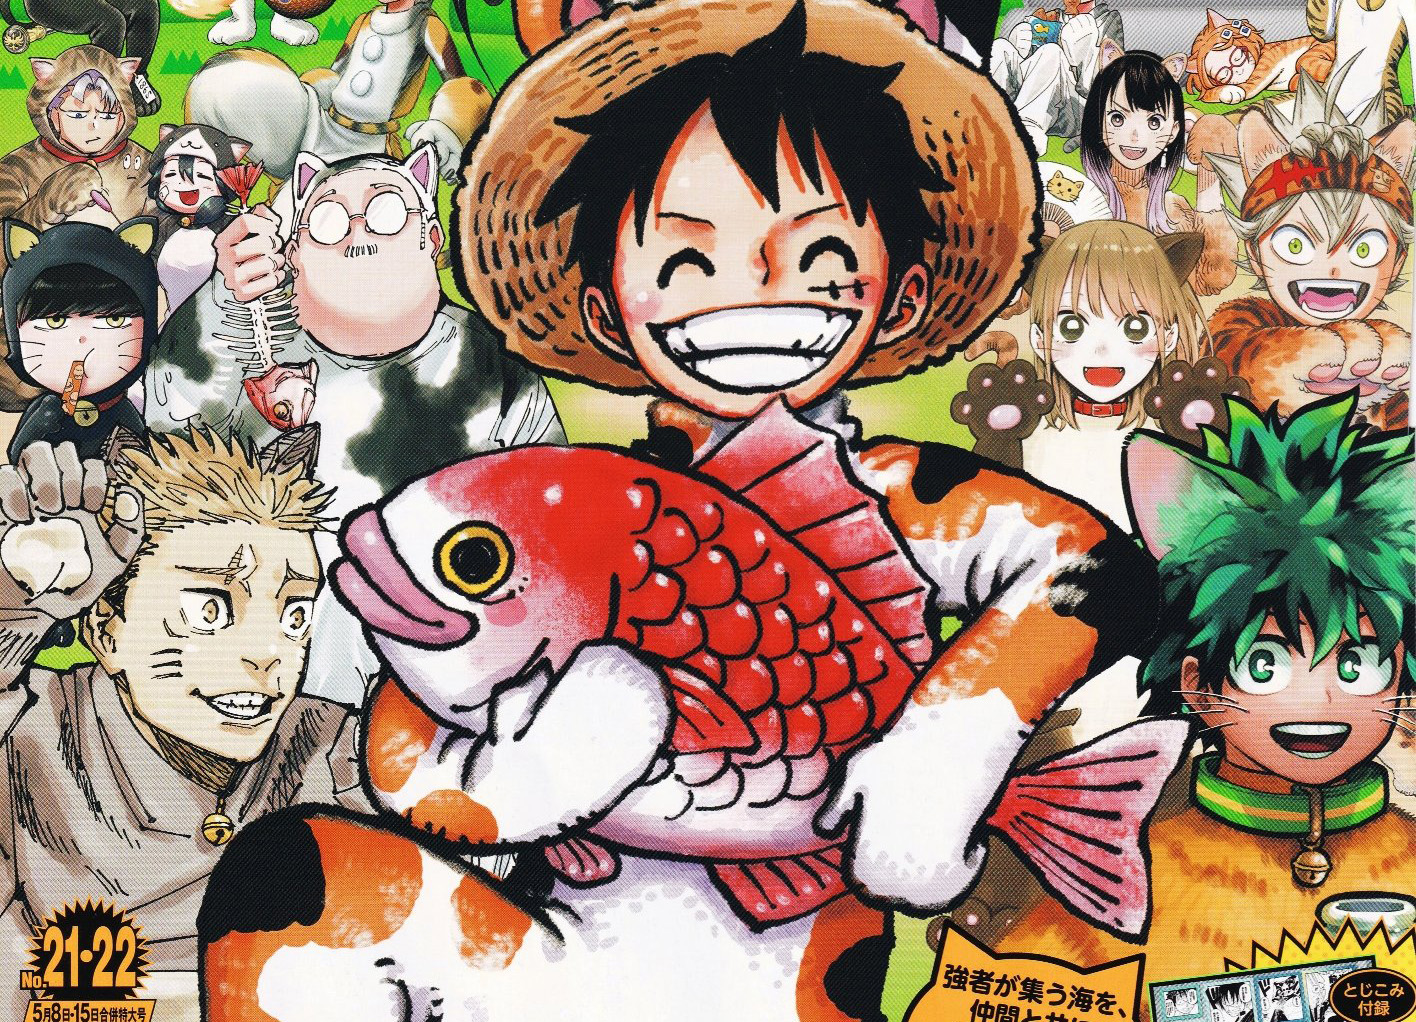 Weekly Shonen JUMP TOC #30/14: Retorno de One Piece, Ansatsu em